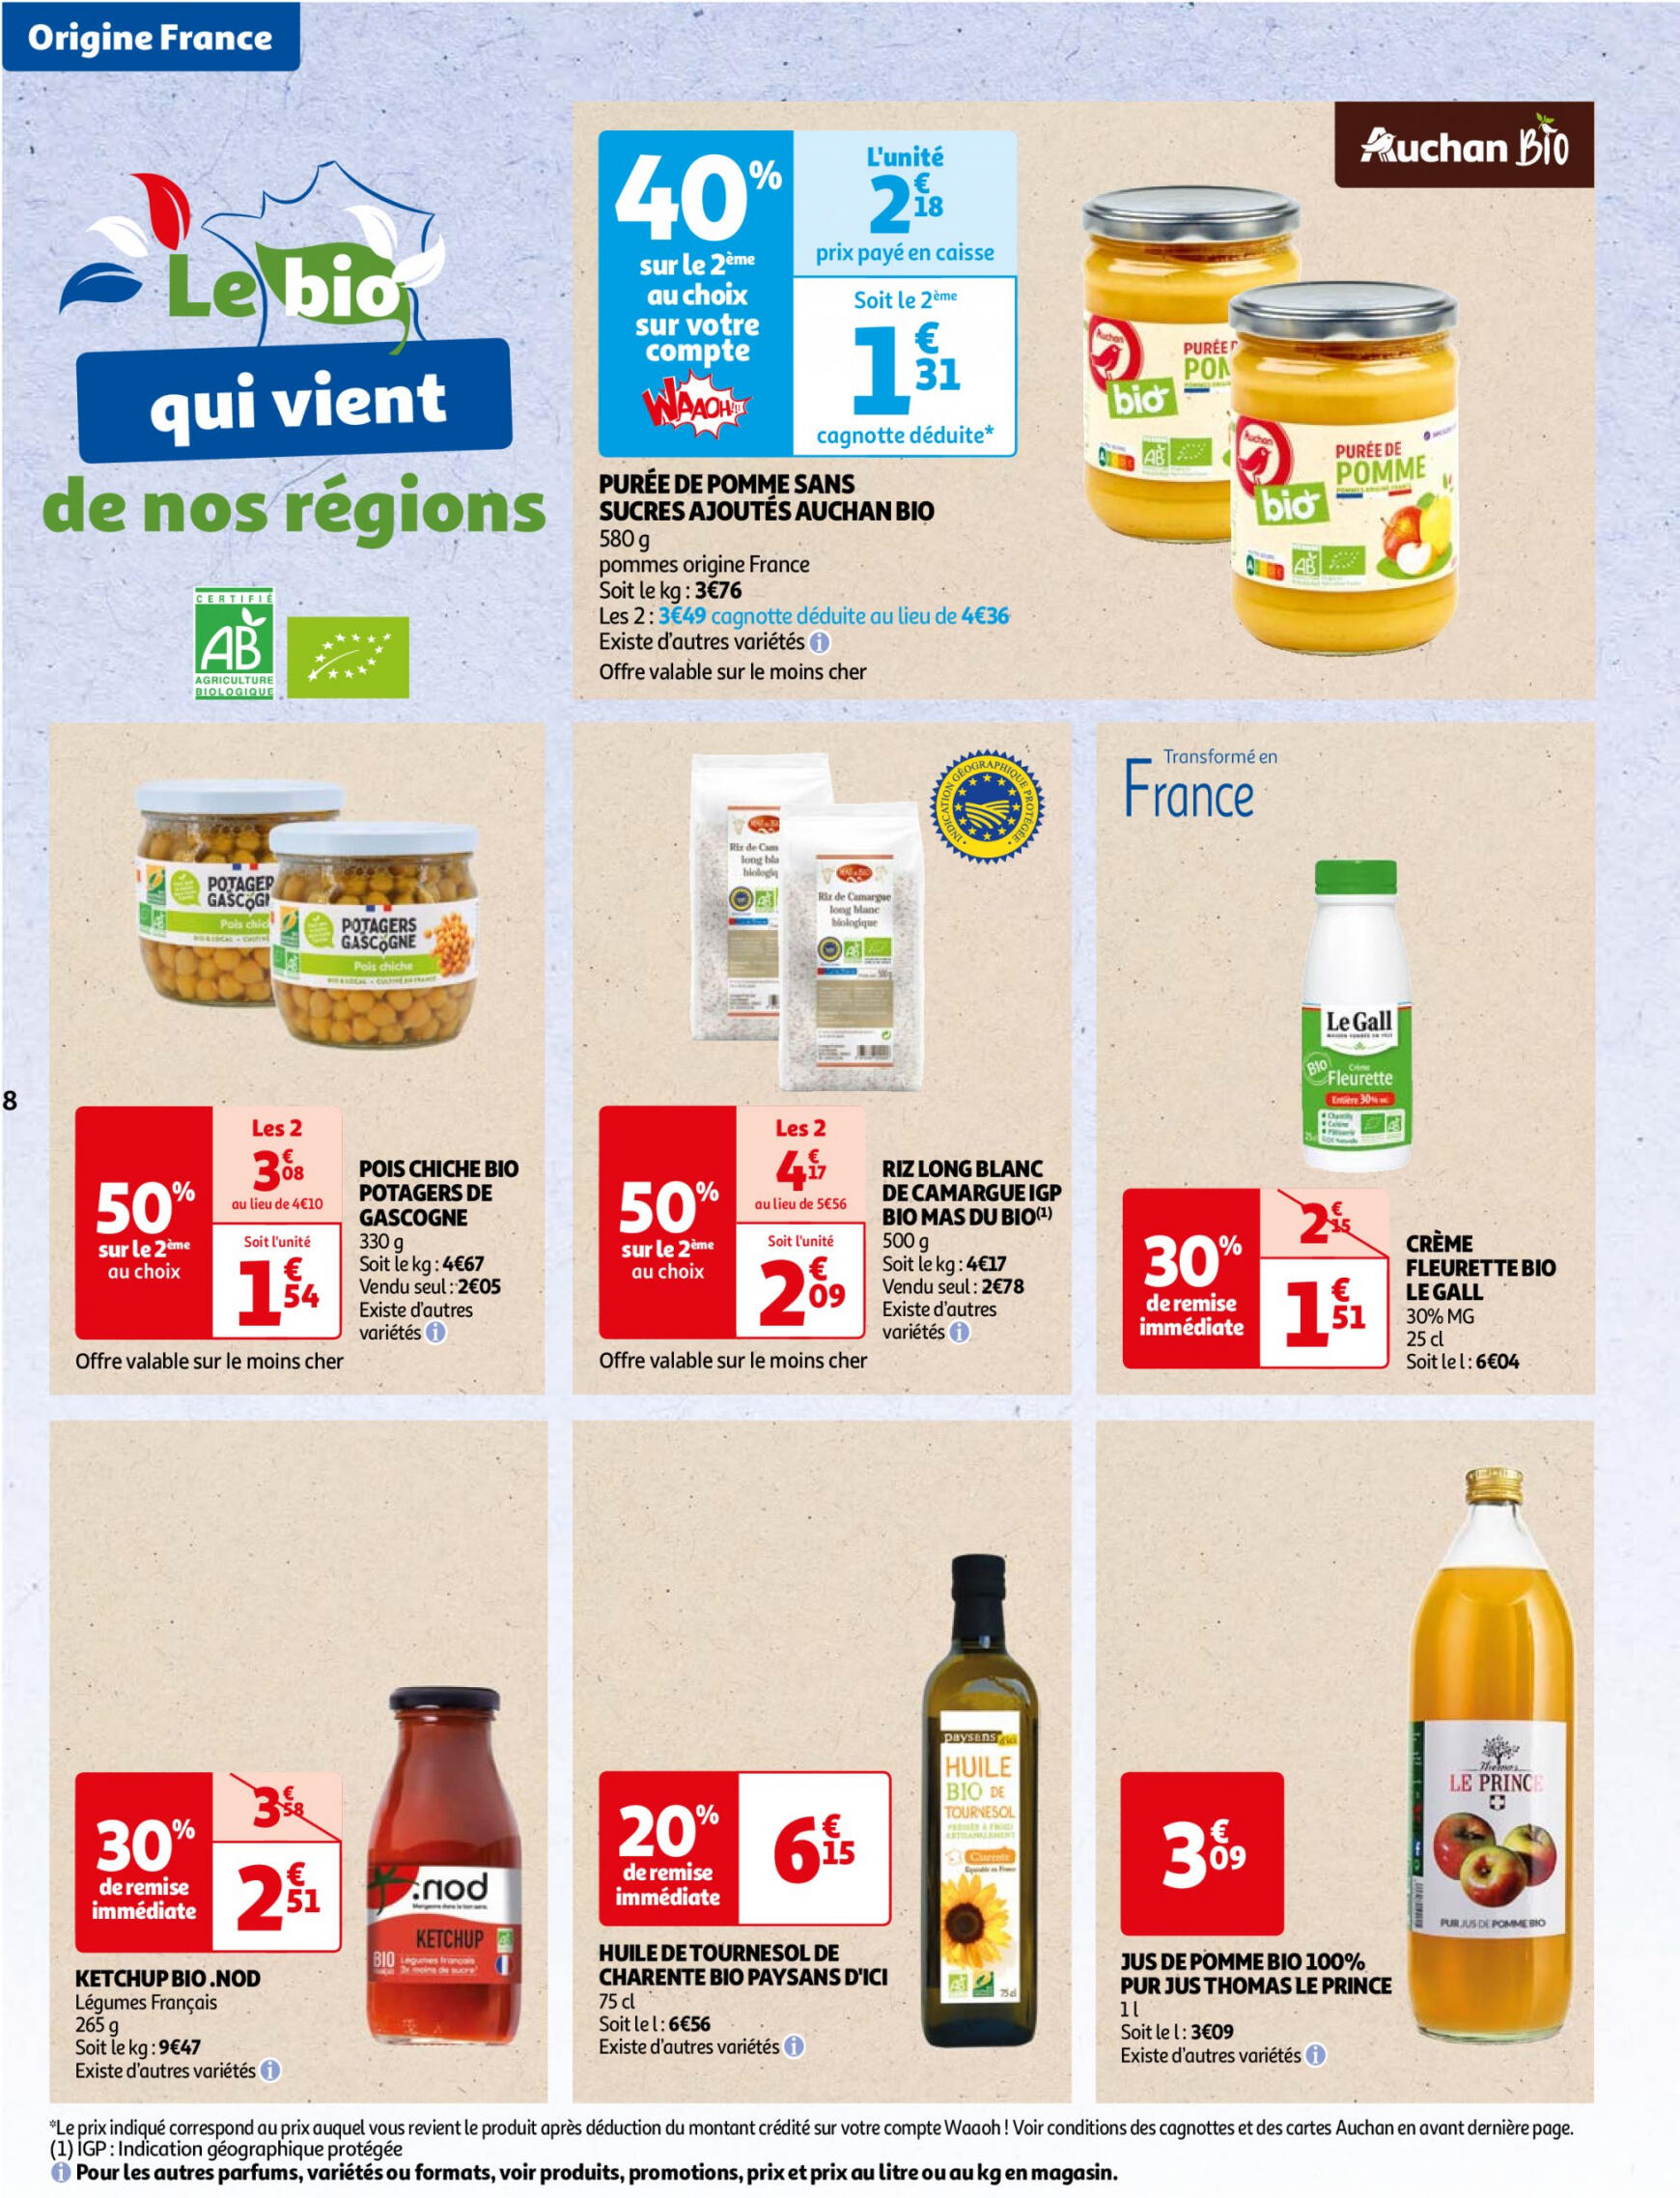 auchan - Auchan - Faites le plein de bio à prix bas folder huidig 22.05. - 03.06. - page: 8